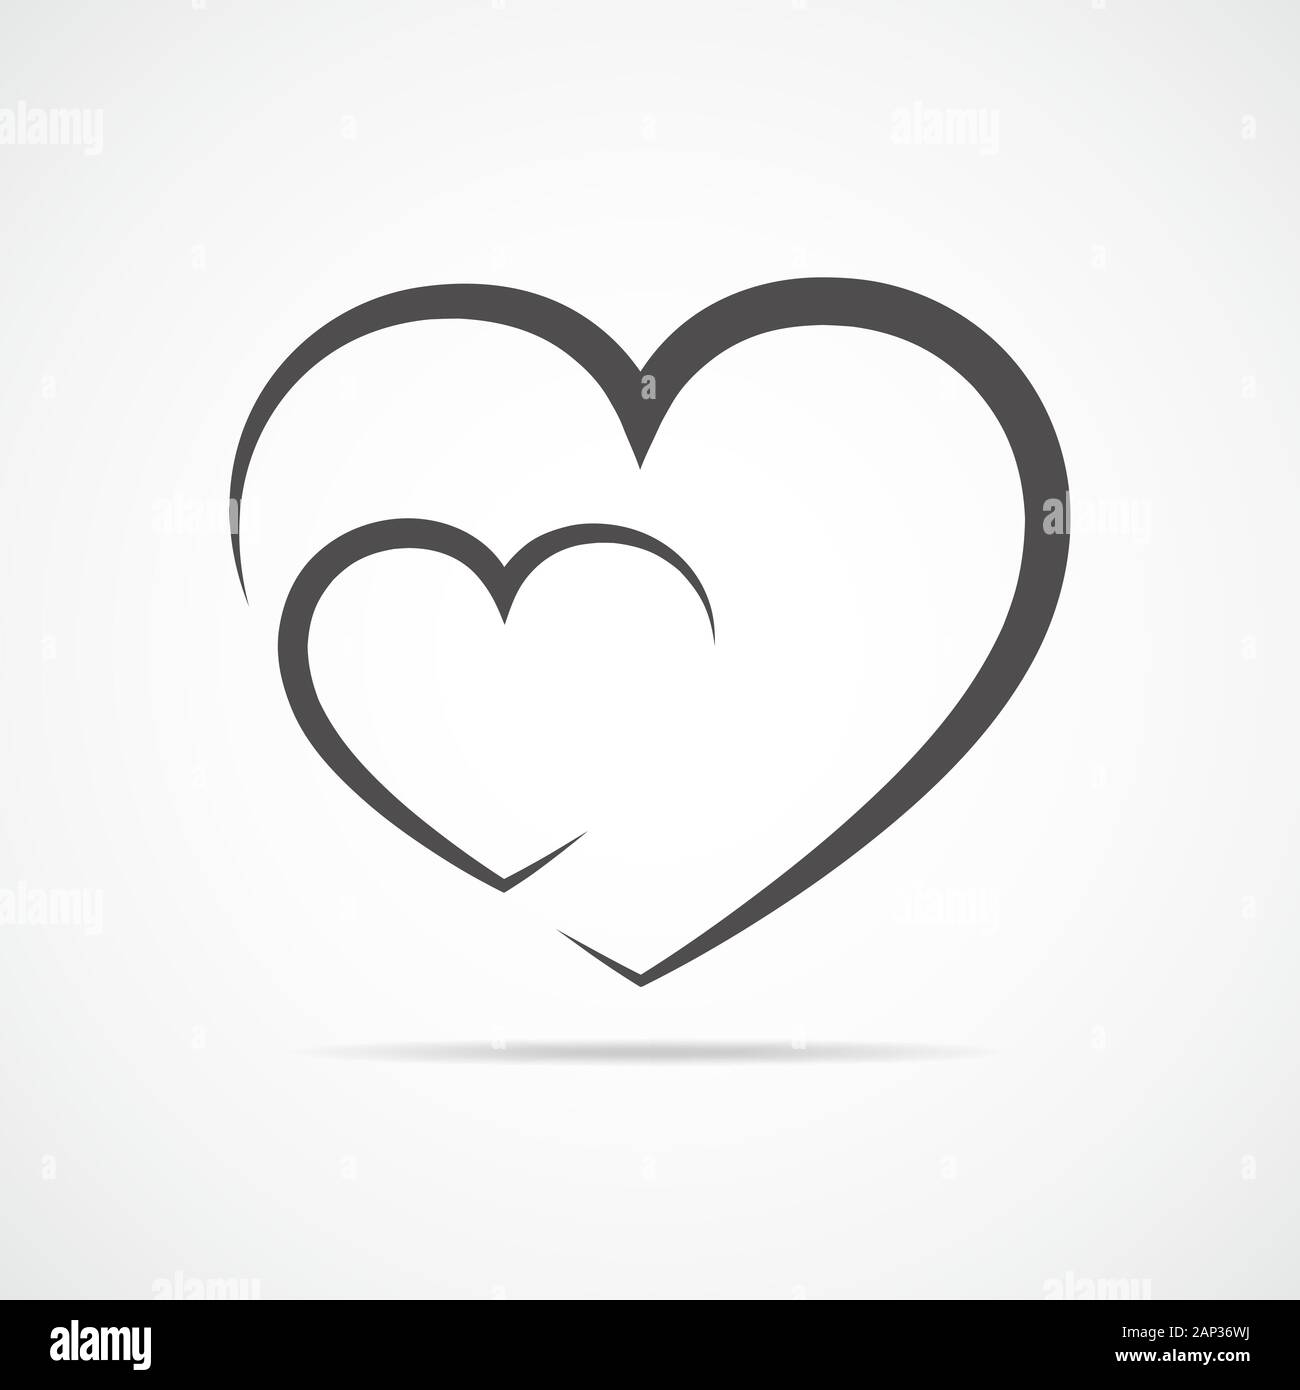 Cuore nero la forma amore - Icone Social media e loghi